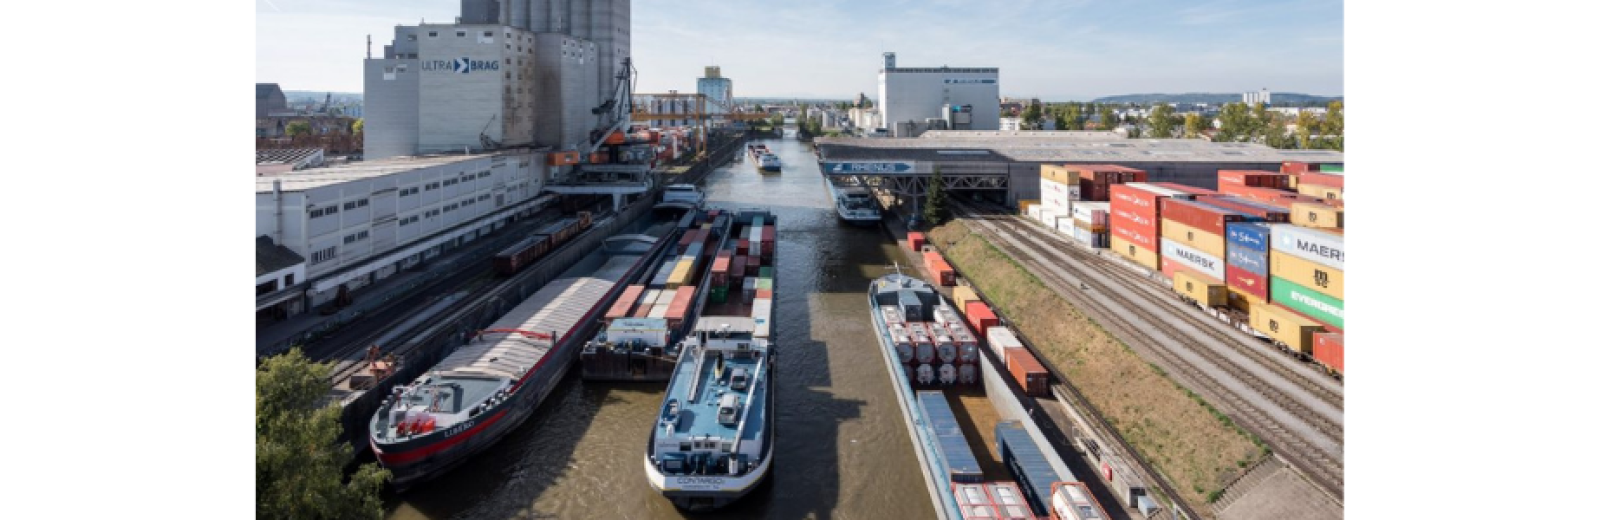 Ogni anno, solo nei porti svizzeri del Reno vengono movimentate 6 milioni di tonnellate di merci. © Patrik Walde